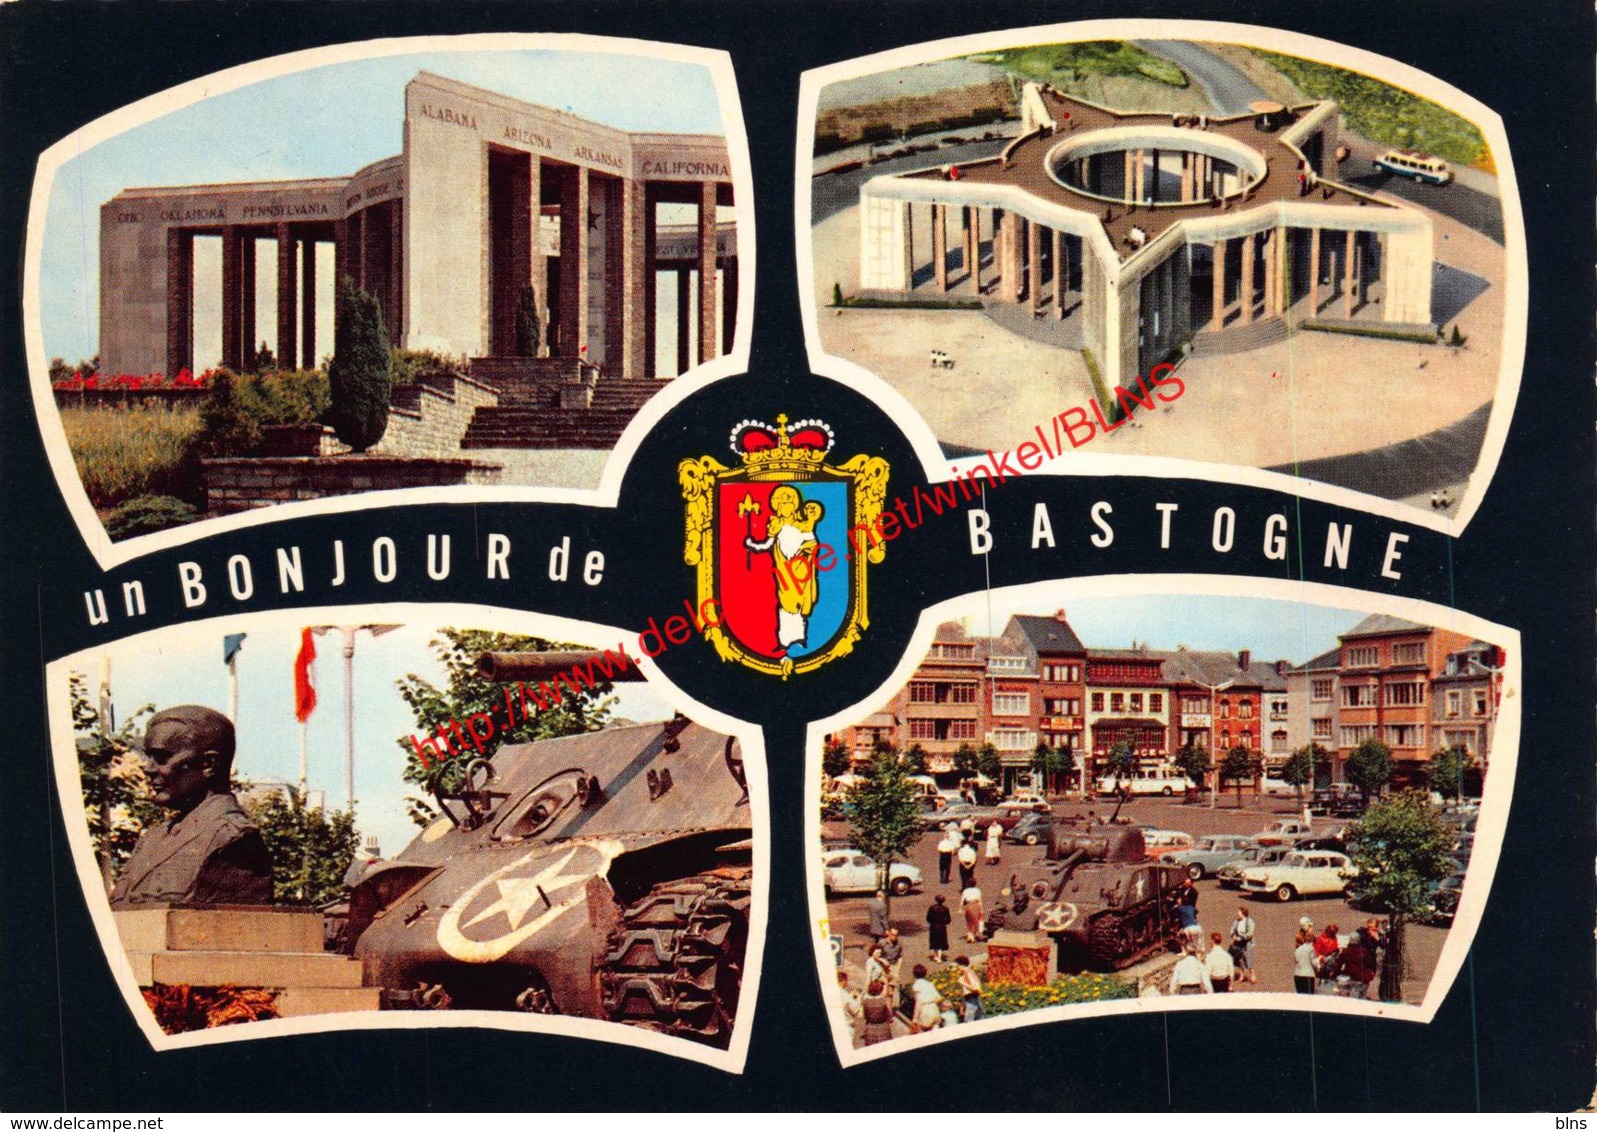 Un Bonjour - Bastogne - Bastogne